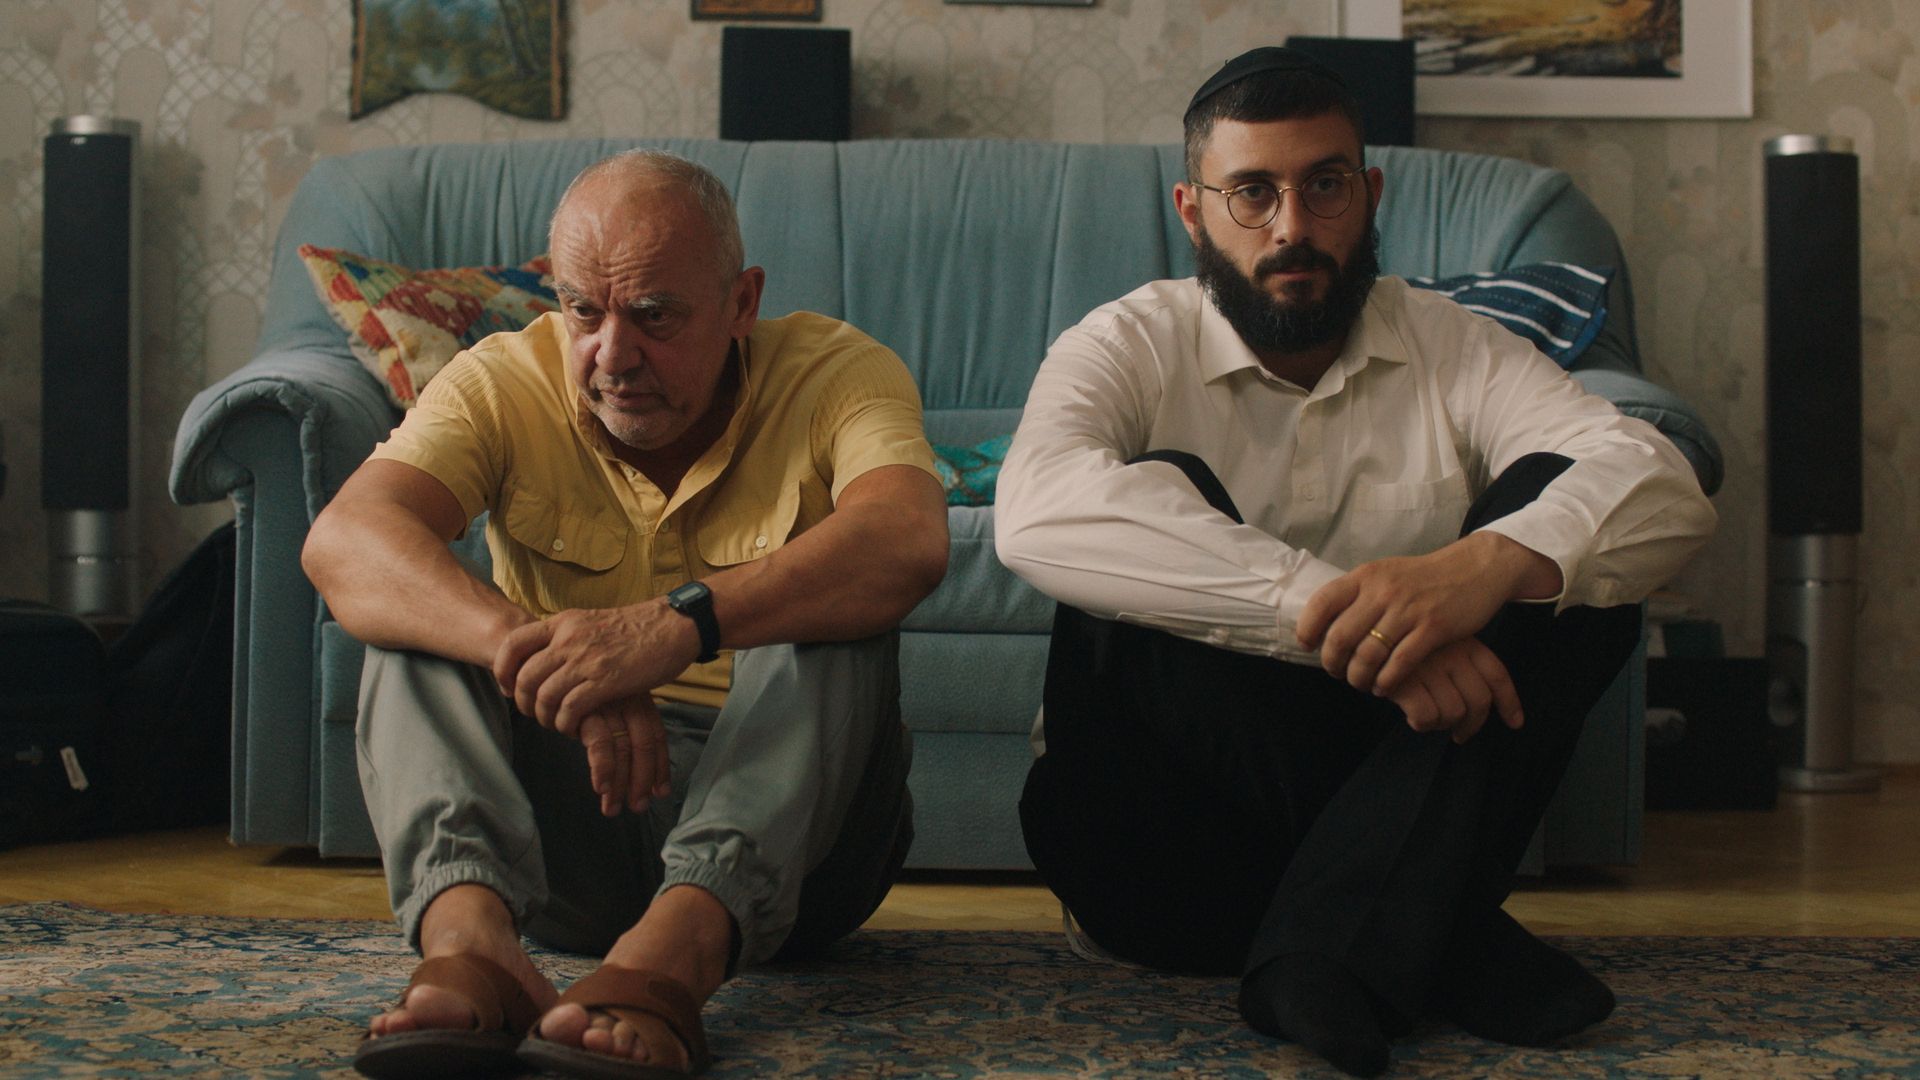 Legjobb elsőfilmes díj a Lefkovicsék gyászolnak rendezőjének | Szombat Online